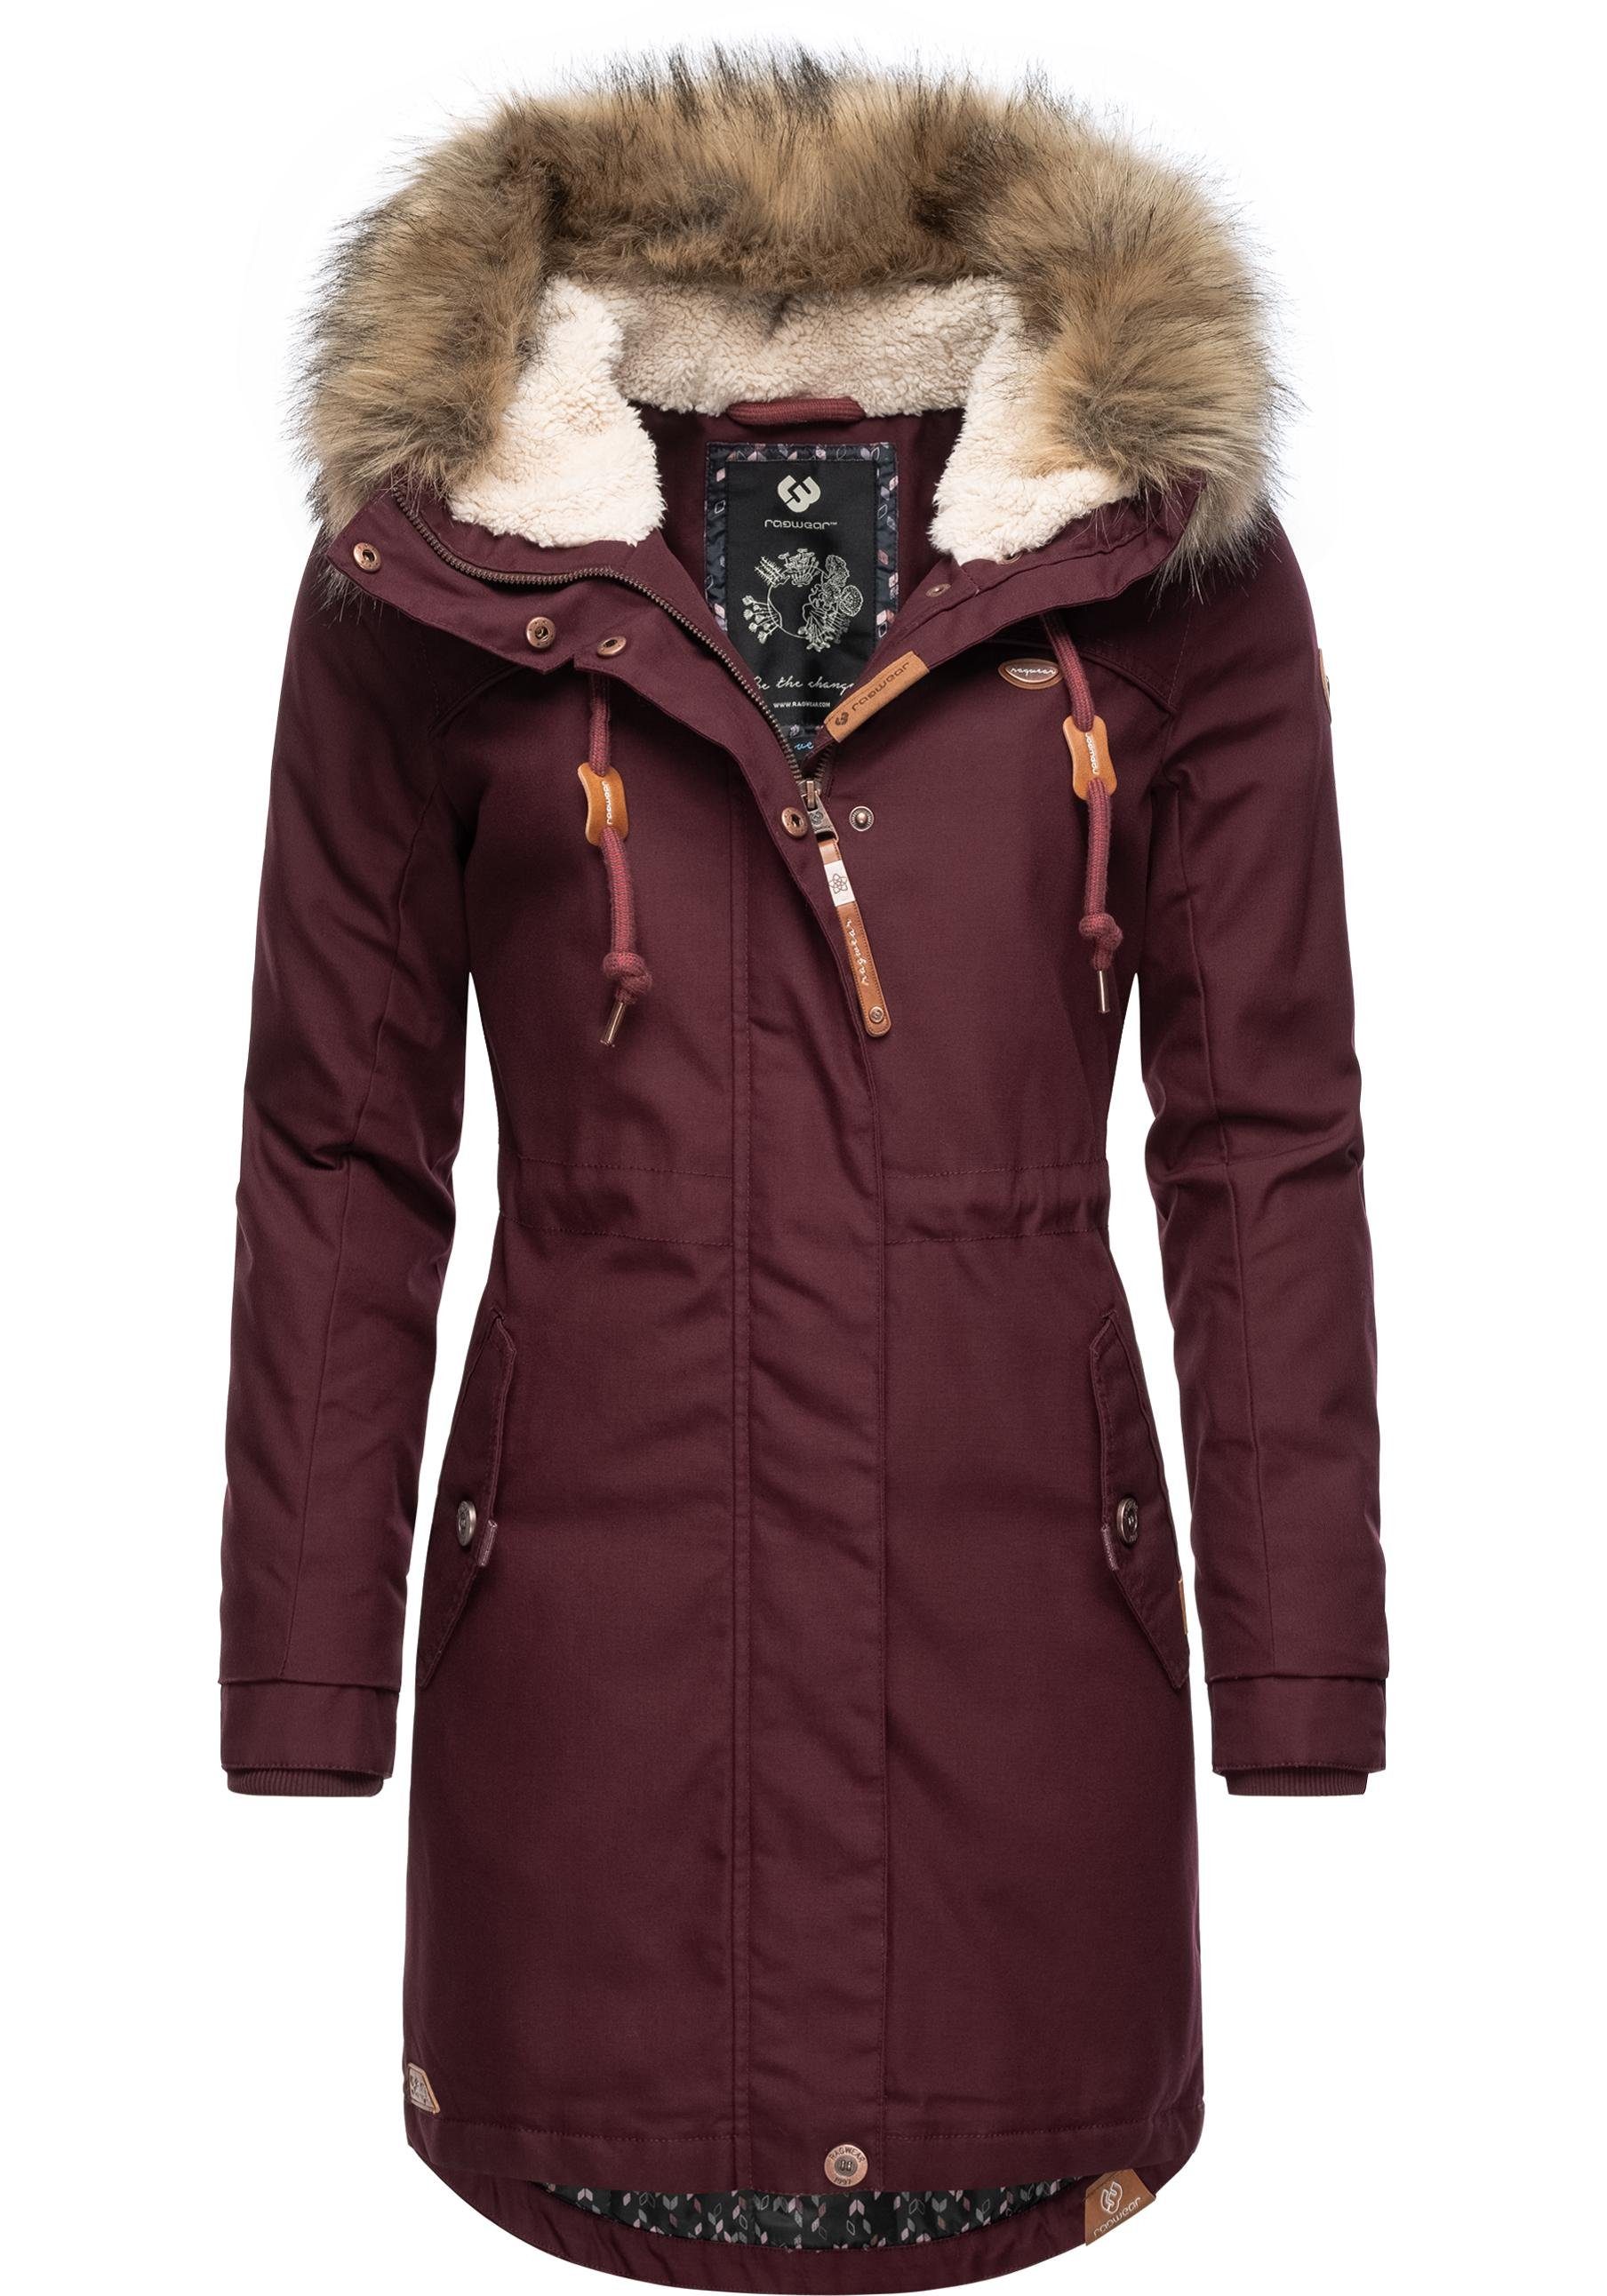 Eleganter Stil Ragwear Winterjacke mit Kunstfellkragen und großer Tawny stylischer dunkelrot Kapuze Winterparka